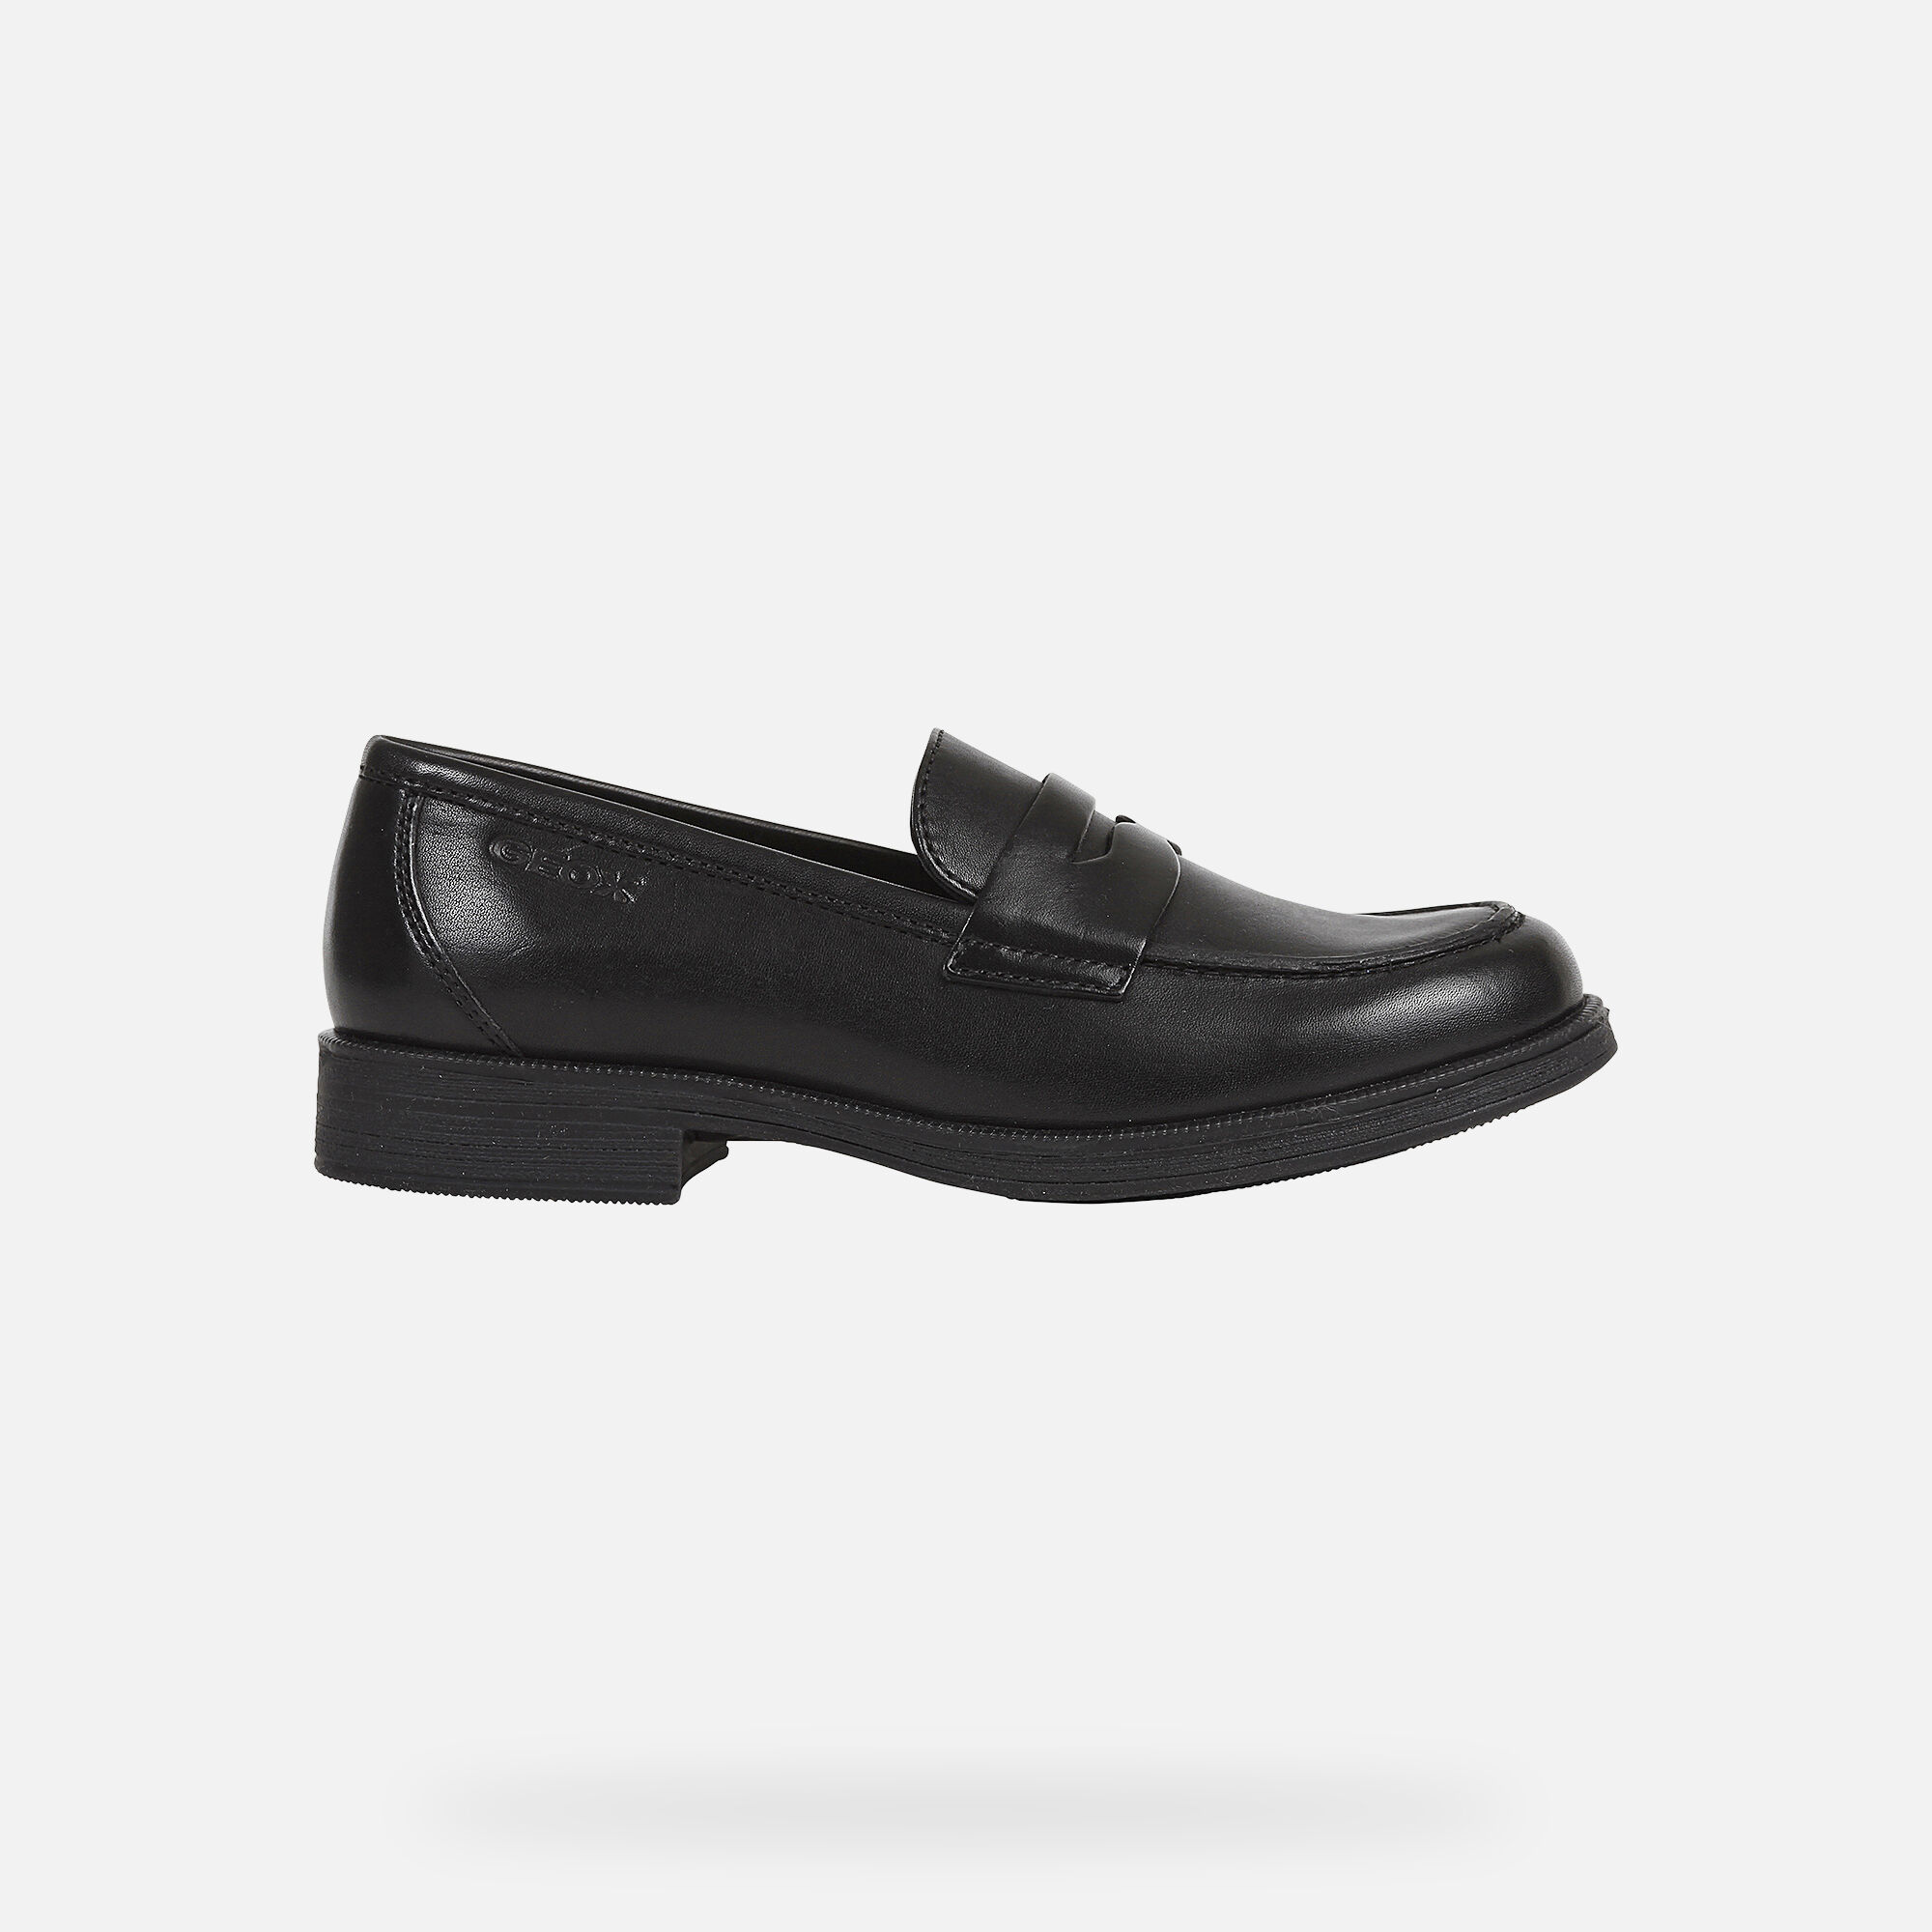 all black uniform shoes